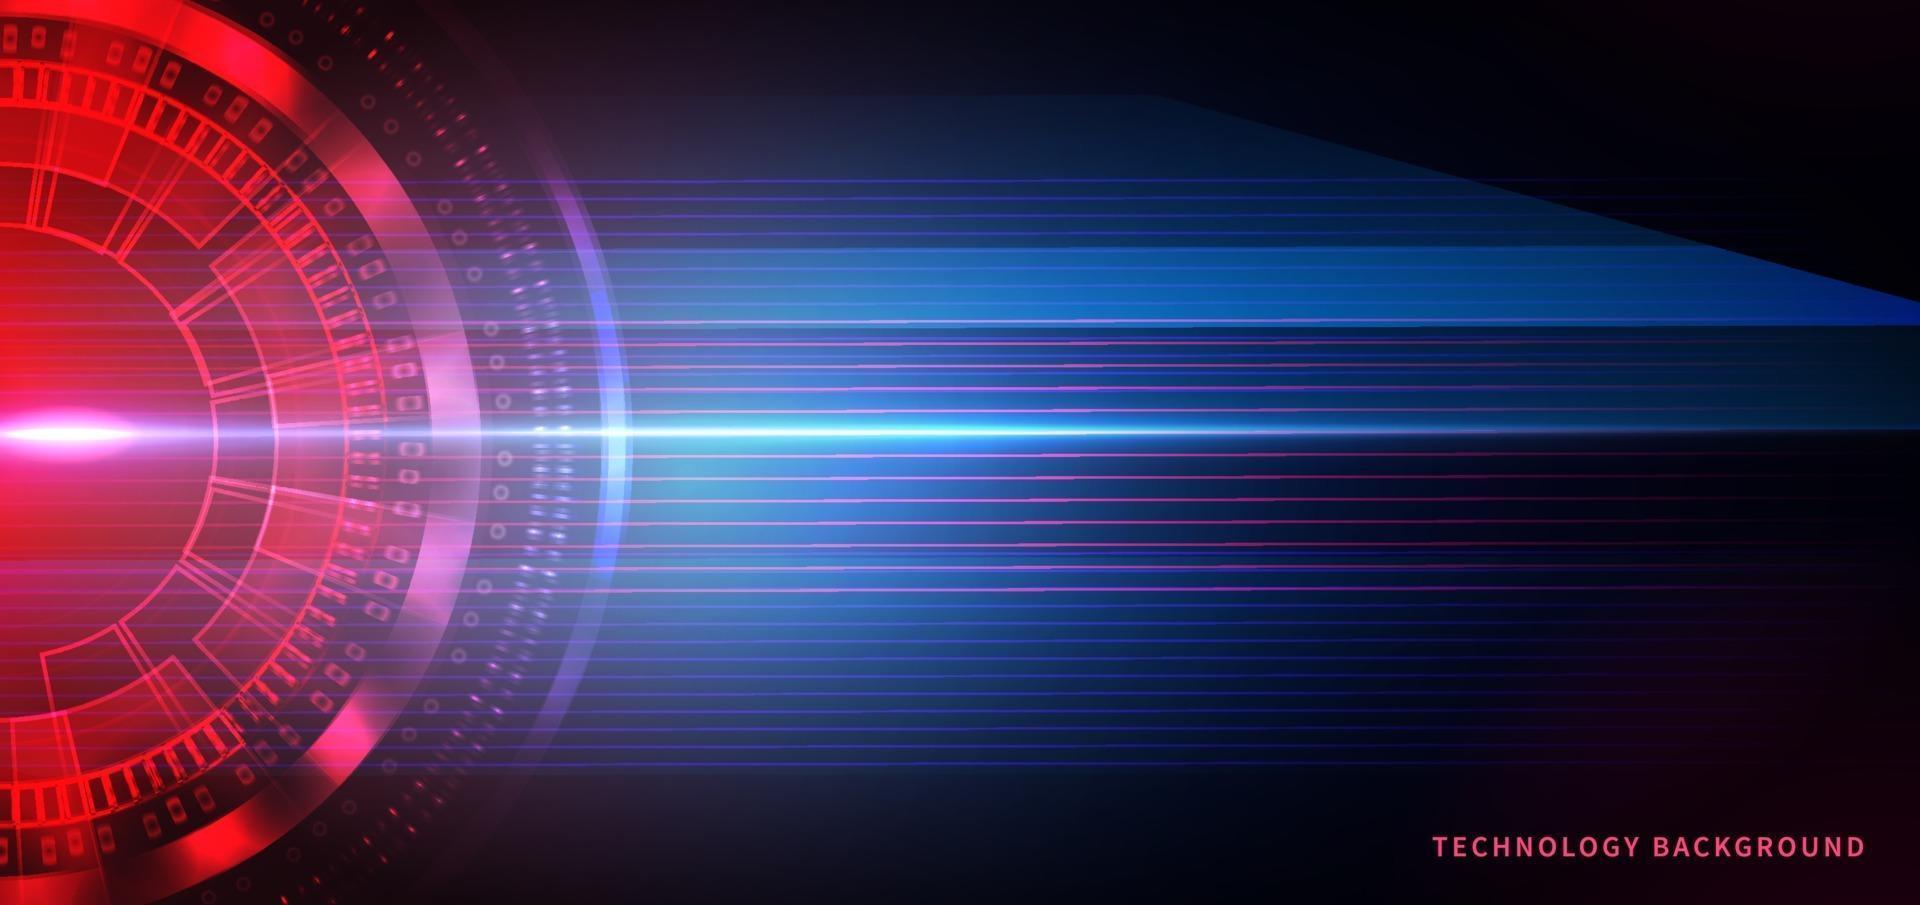 abstrakte Technologie futuristische rote und blaue Zahnradkreise mit geometrischen Elementen auf dunklem Hintergrund. vektor